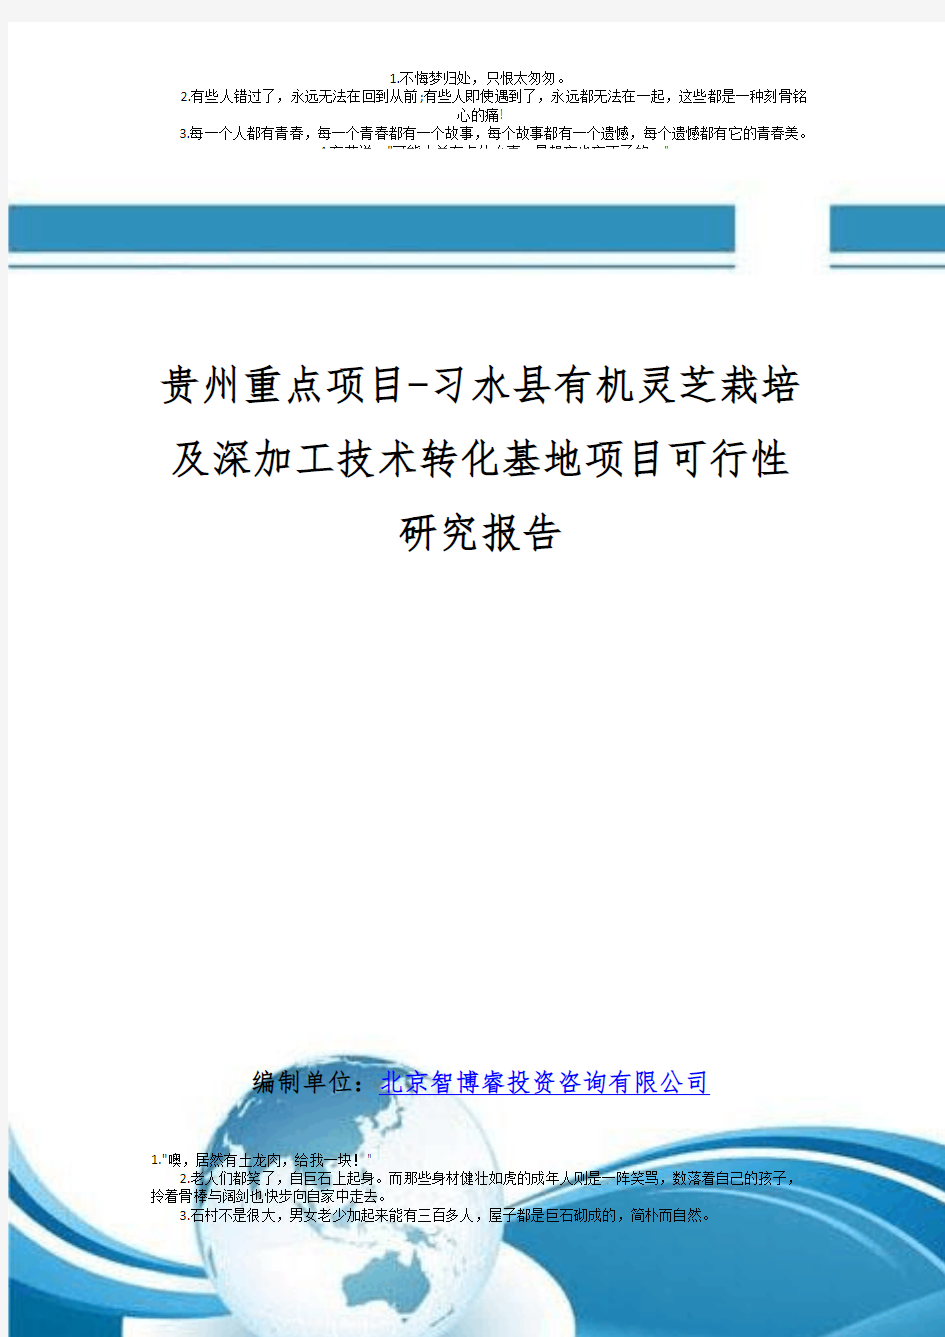 贵州重点项目-习水县有机灵芝栽培及深加工技术转化基地项目可行性研究报告